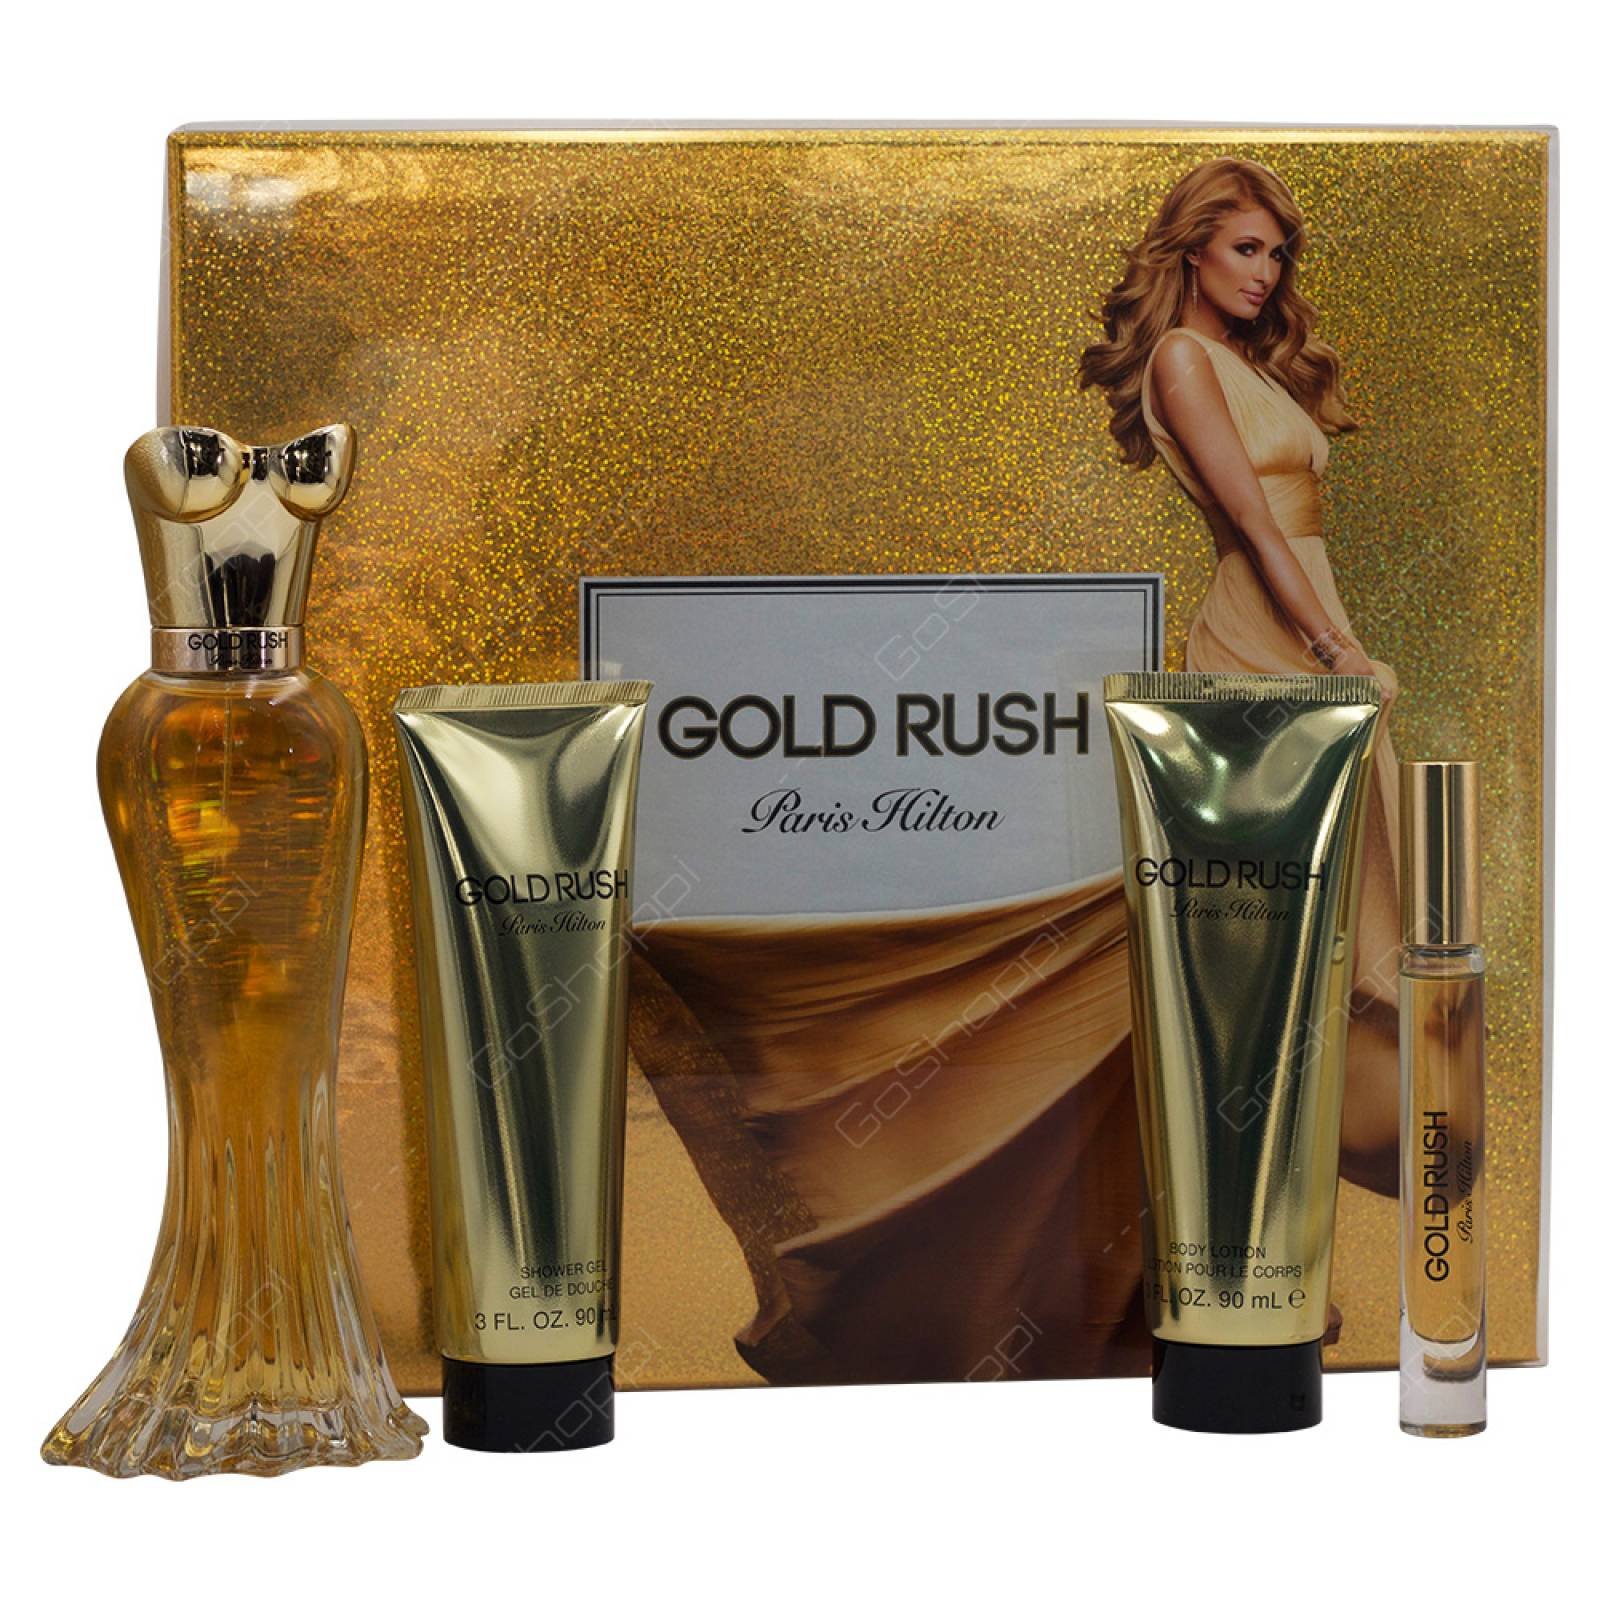 Set 4 pzs Gold Rush dama de Paris Hilton Eau de Parfum 100 ml